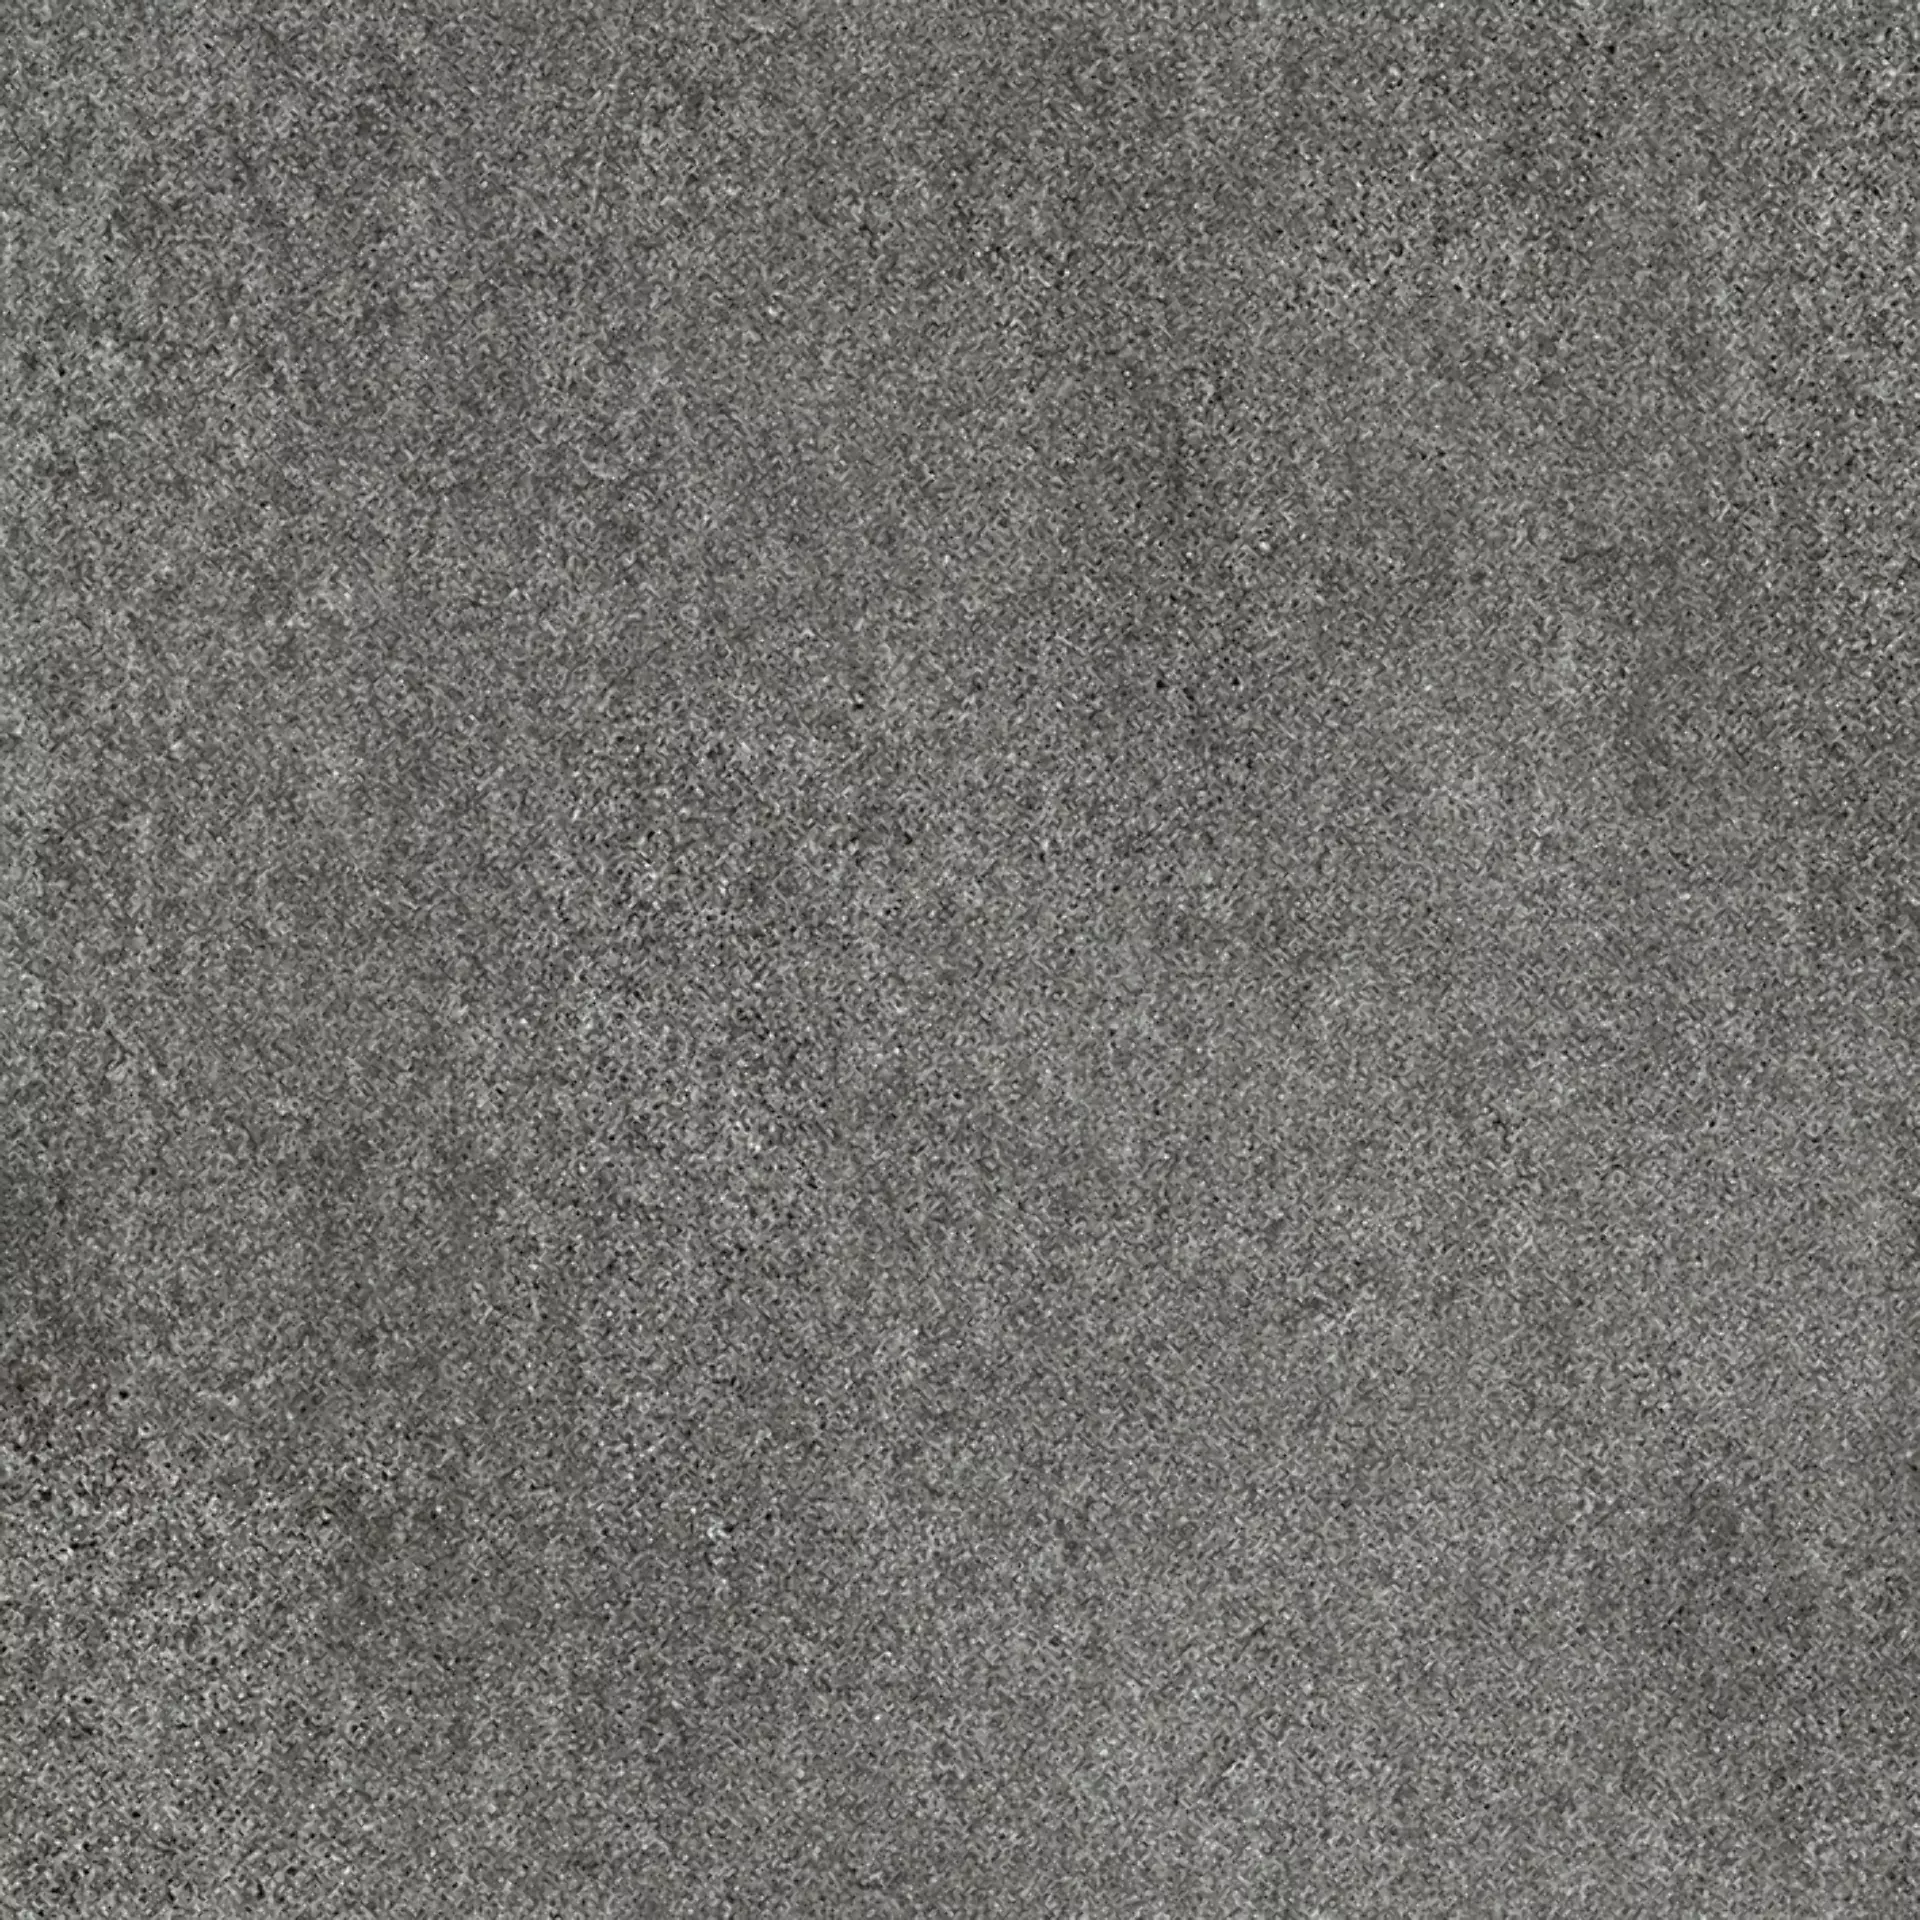 Wandfliese,Bodenfliese Villeroy & Boch Solid Tones Dark Stone Matt Dark Stone 2310-PS62 matt 60x60cm rektifiziert 10mm